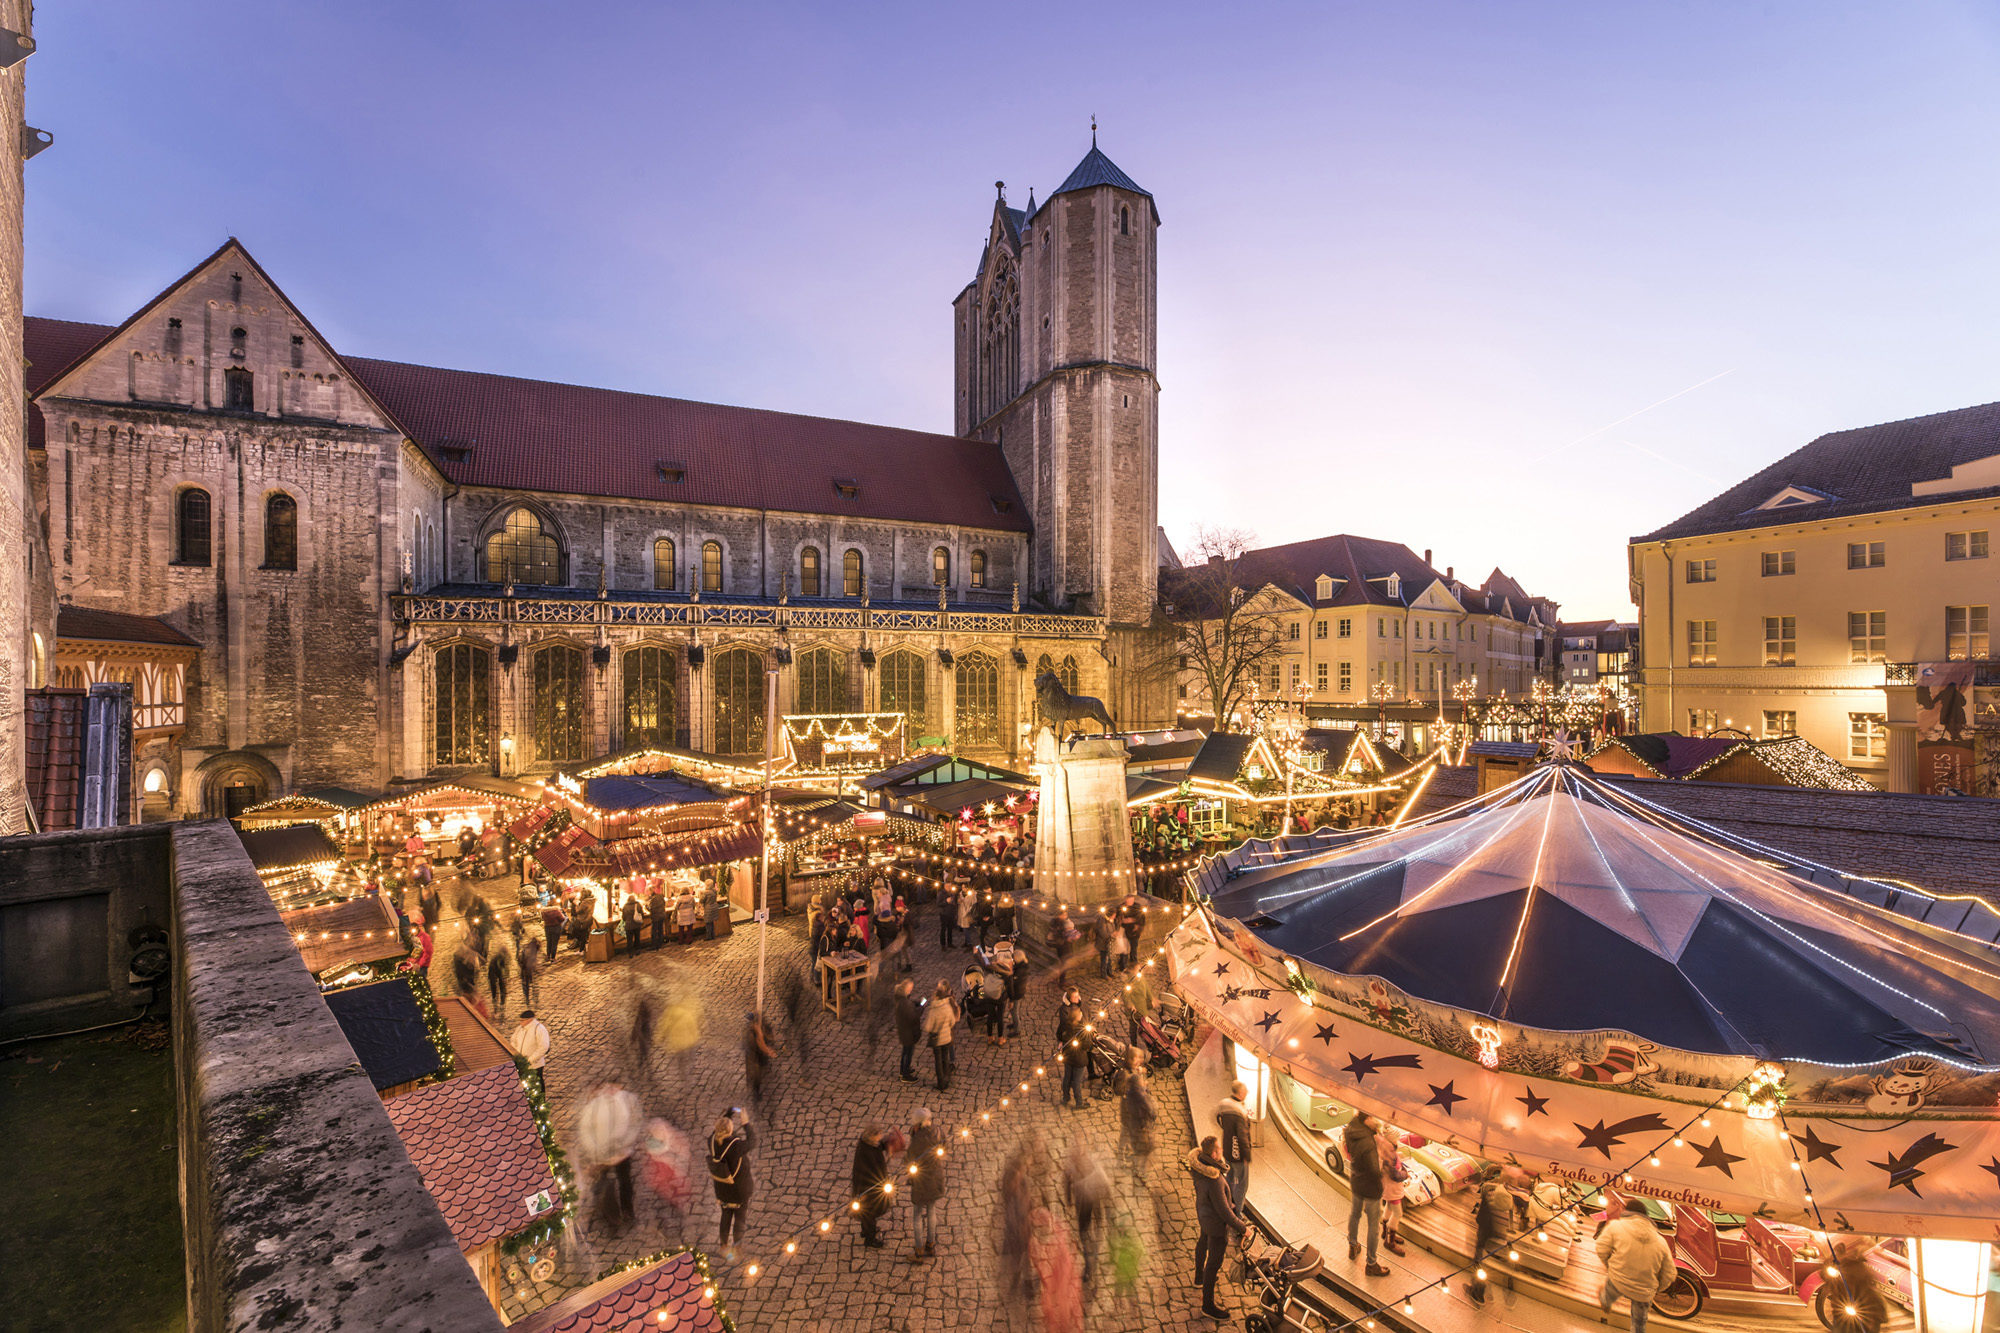 Ob kulinarischer Genuss bei der mummegenussmeile oder adventliche Stimmung beim Weihnachtsmarkt: Im November erwarten Gäste und Einheimische abwechslungsreiche Veranstaltungen in Braunschweig.